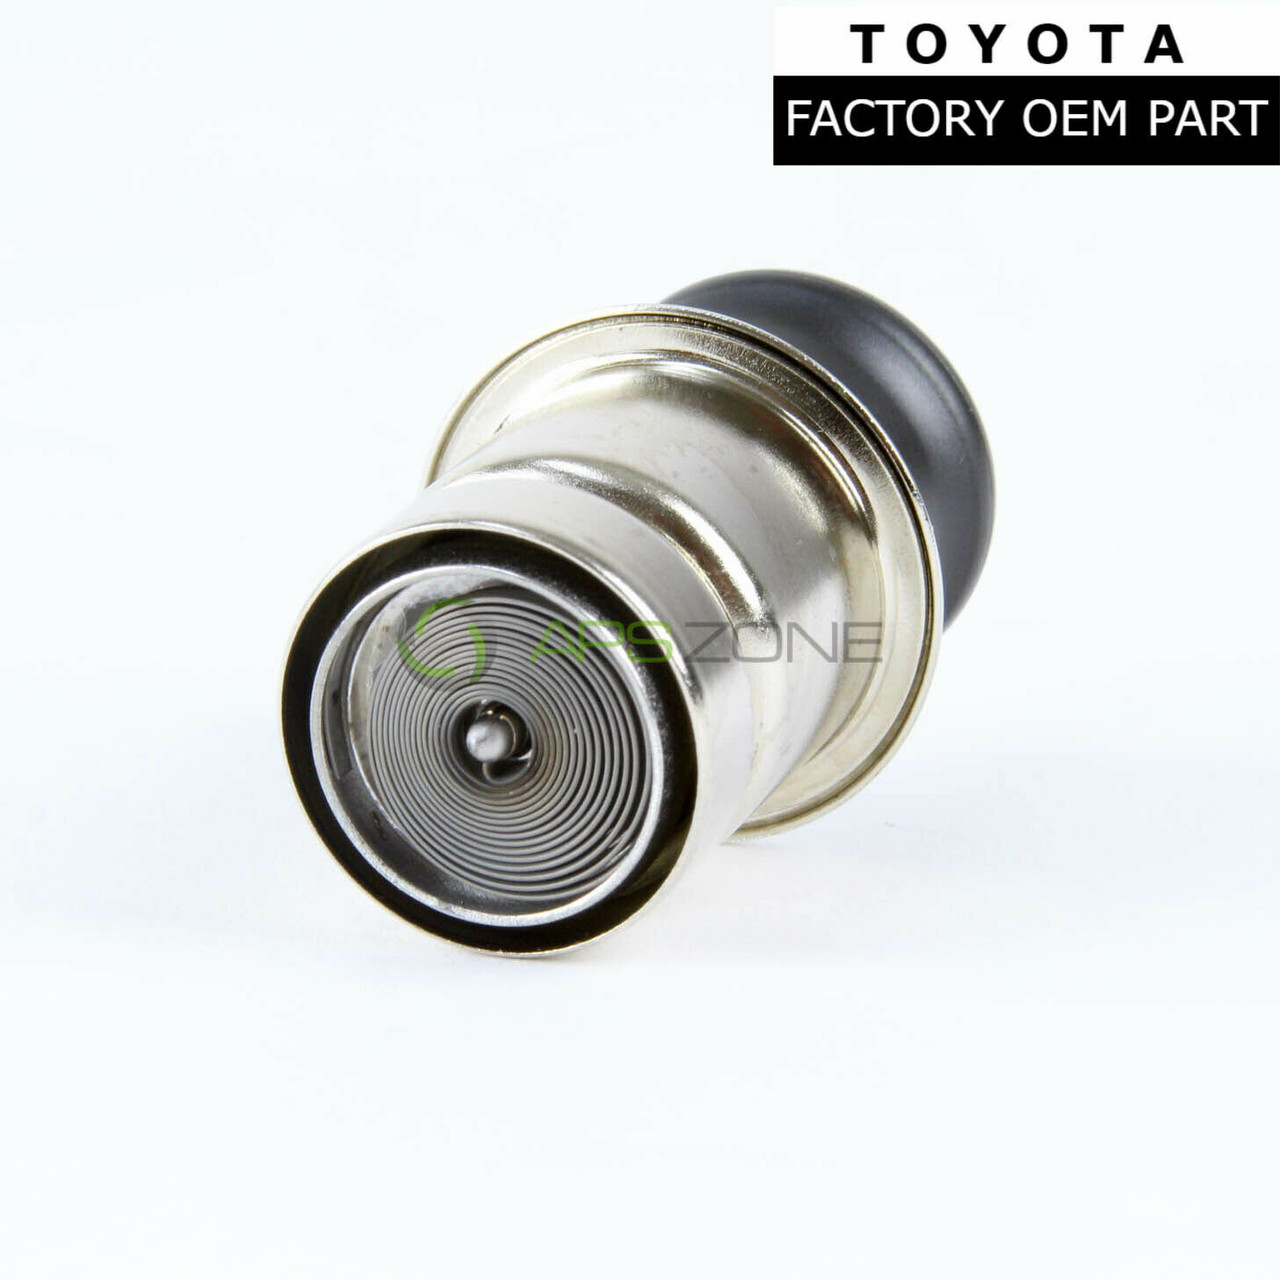 Toyota 4Runner Scion tC Lexus SC400 RX350 Cigarette Lighter Element 85520-28010 | 8552028010 Genuine OEM